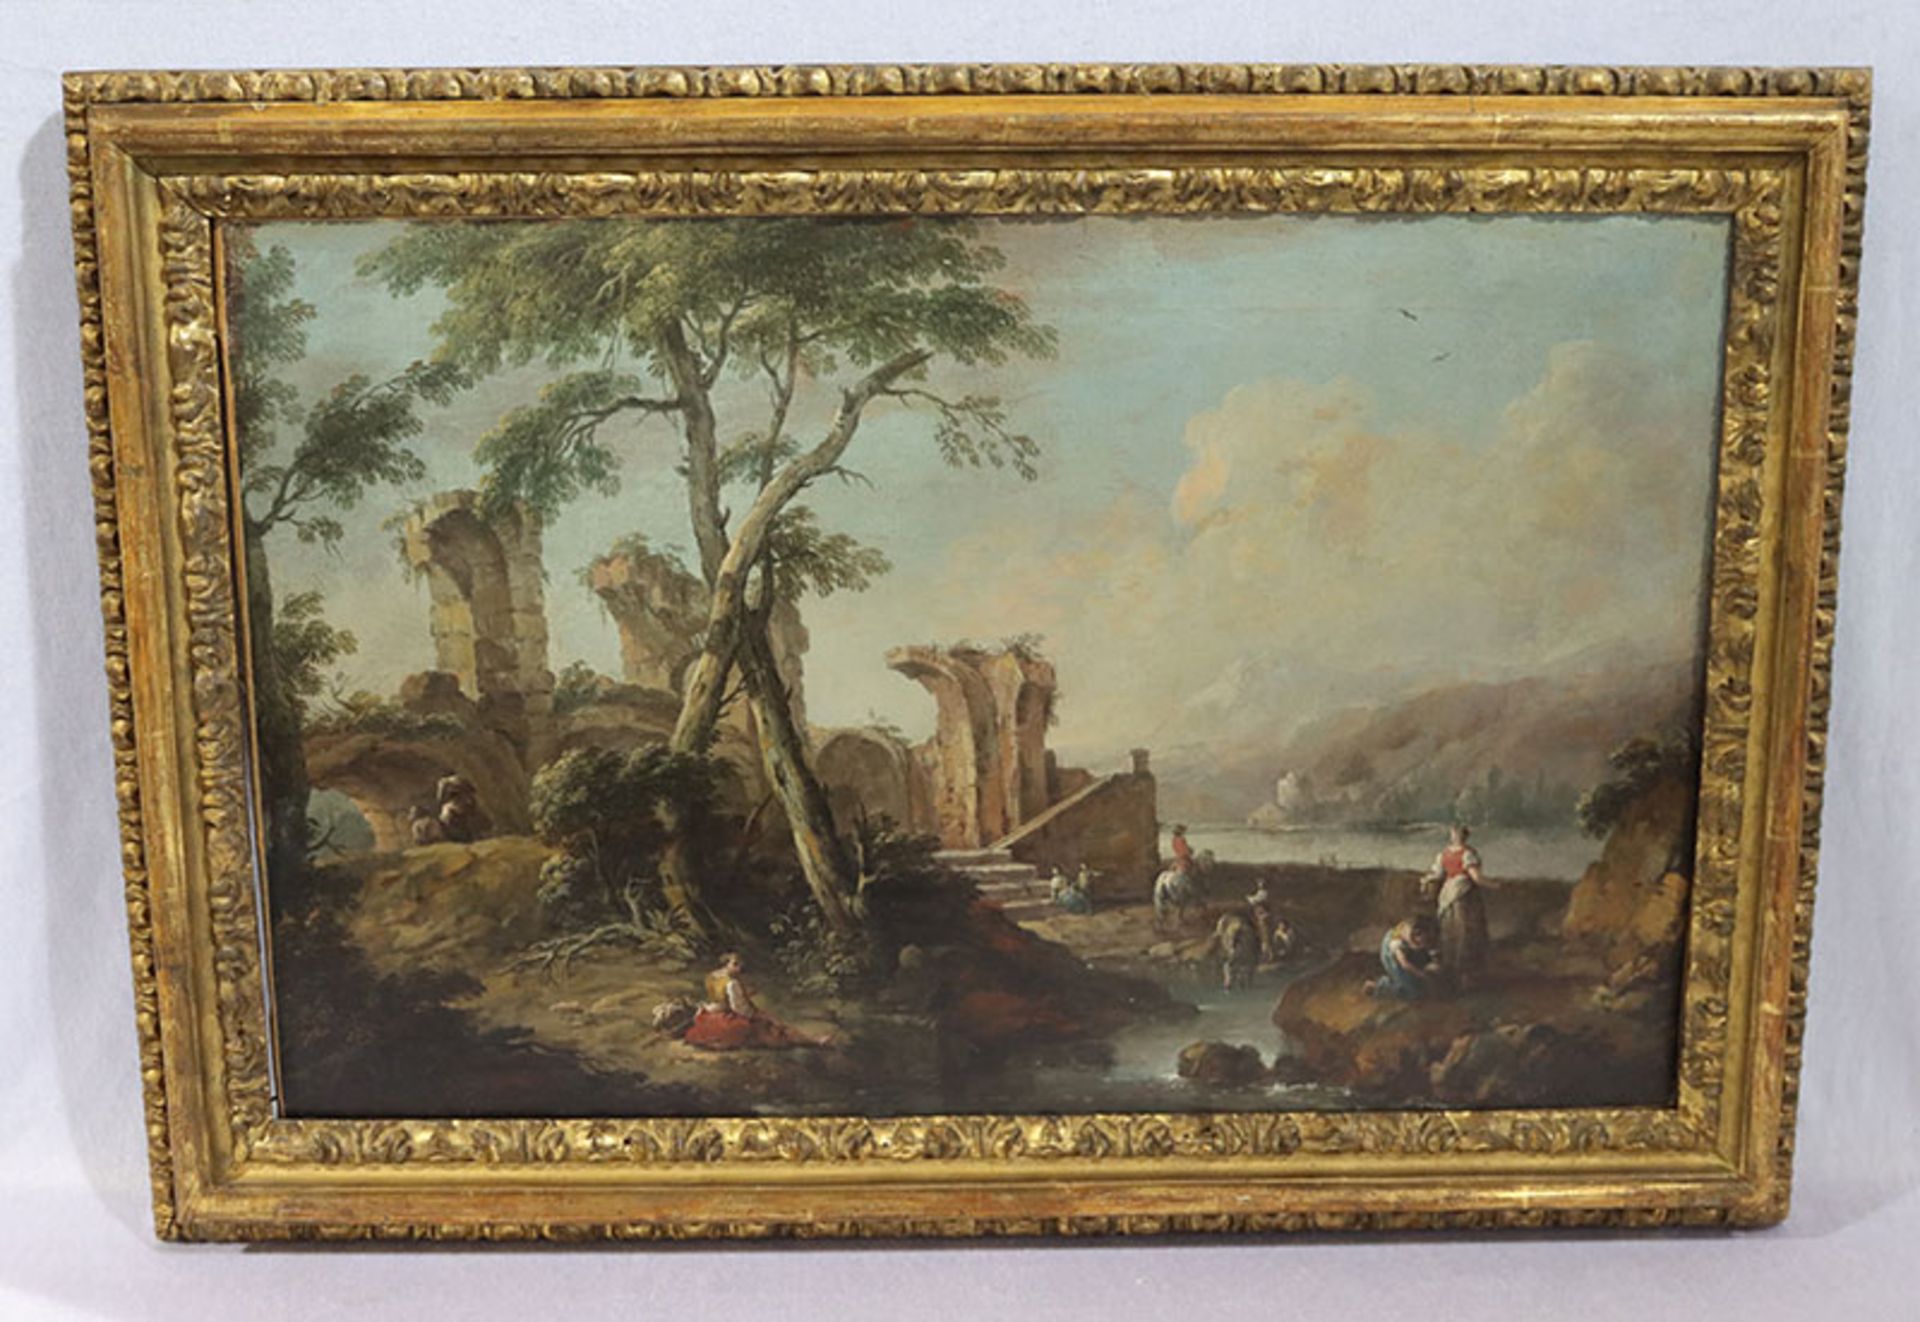 Gemälde ÖL/LW 'Landschafts-Szenerie mit Ruine und Figurenstaffagen', um 1800, LW doubliert, gerahmt,